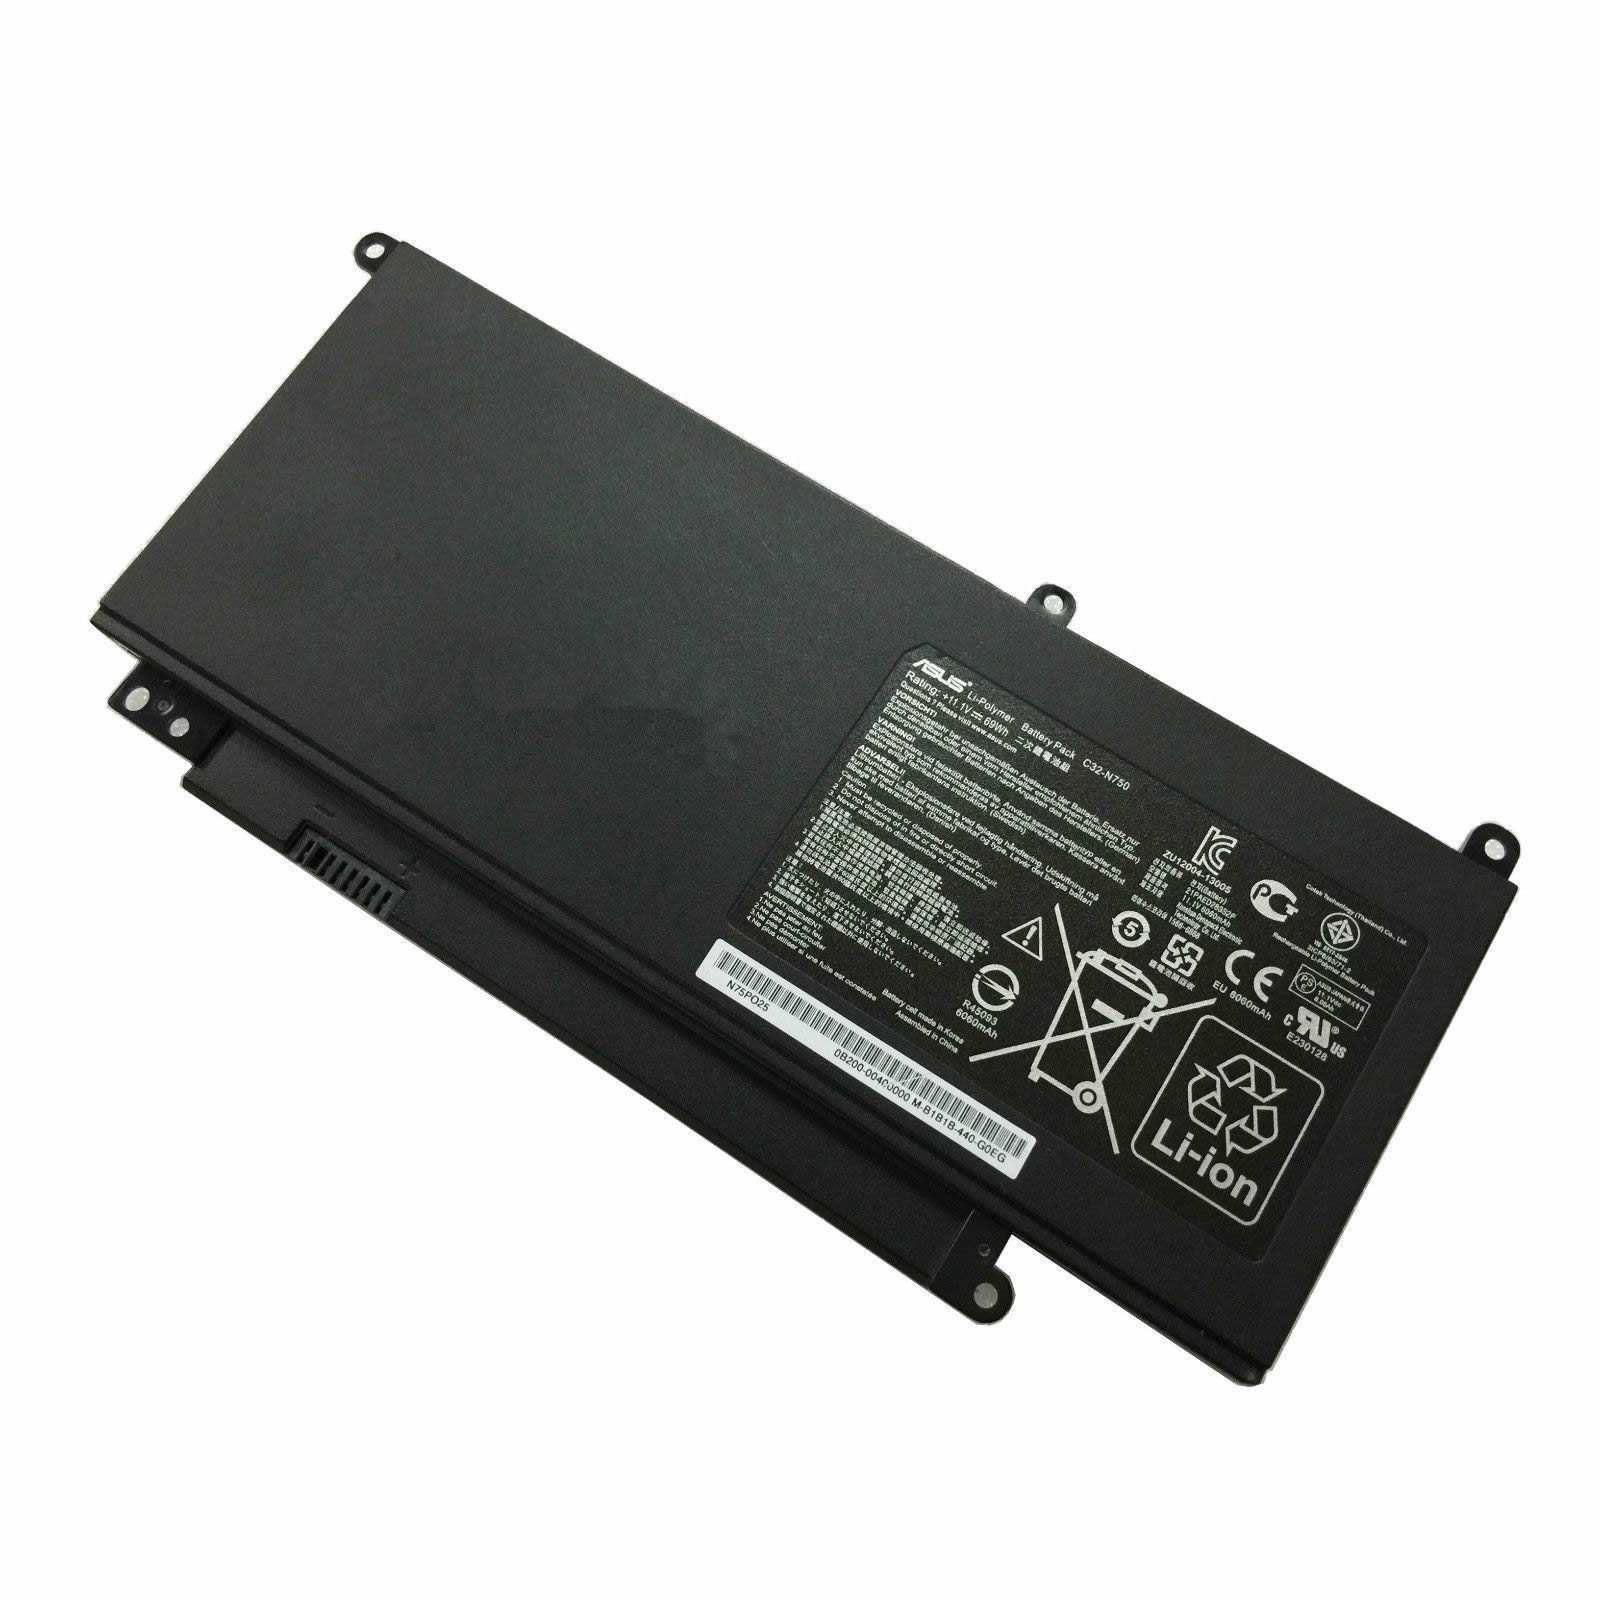 Asus C32-N750 11.1V 6260mAh, 69Wh Original Battery for Asus N750JV N750JK N750Y47JV-SL Series